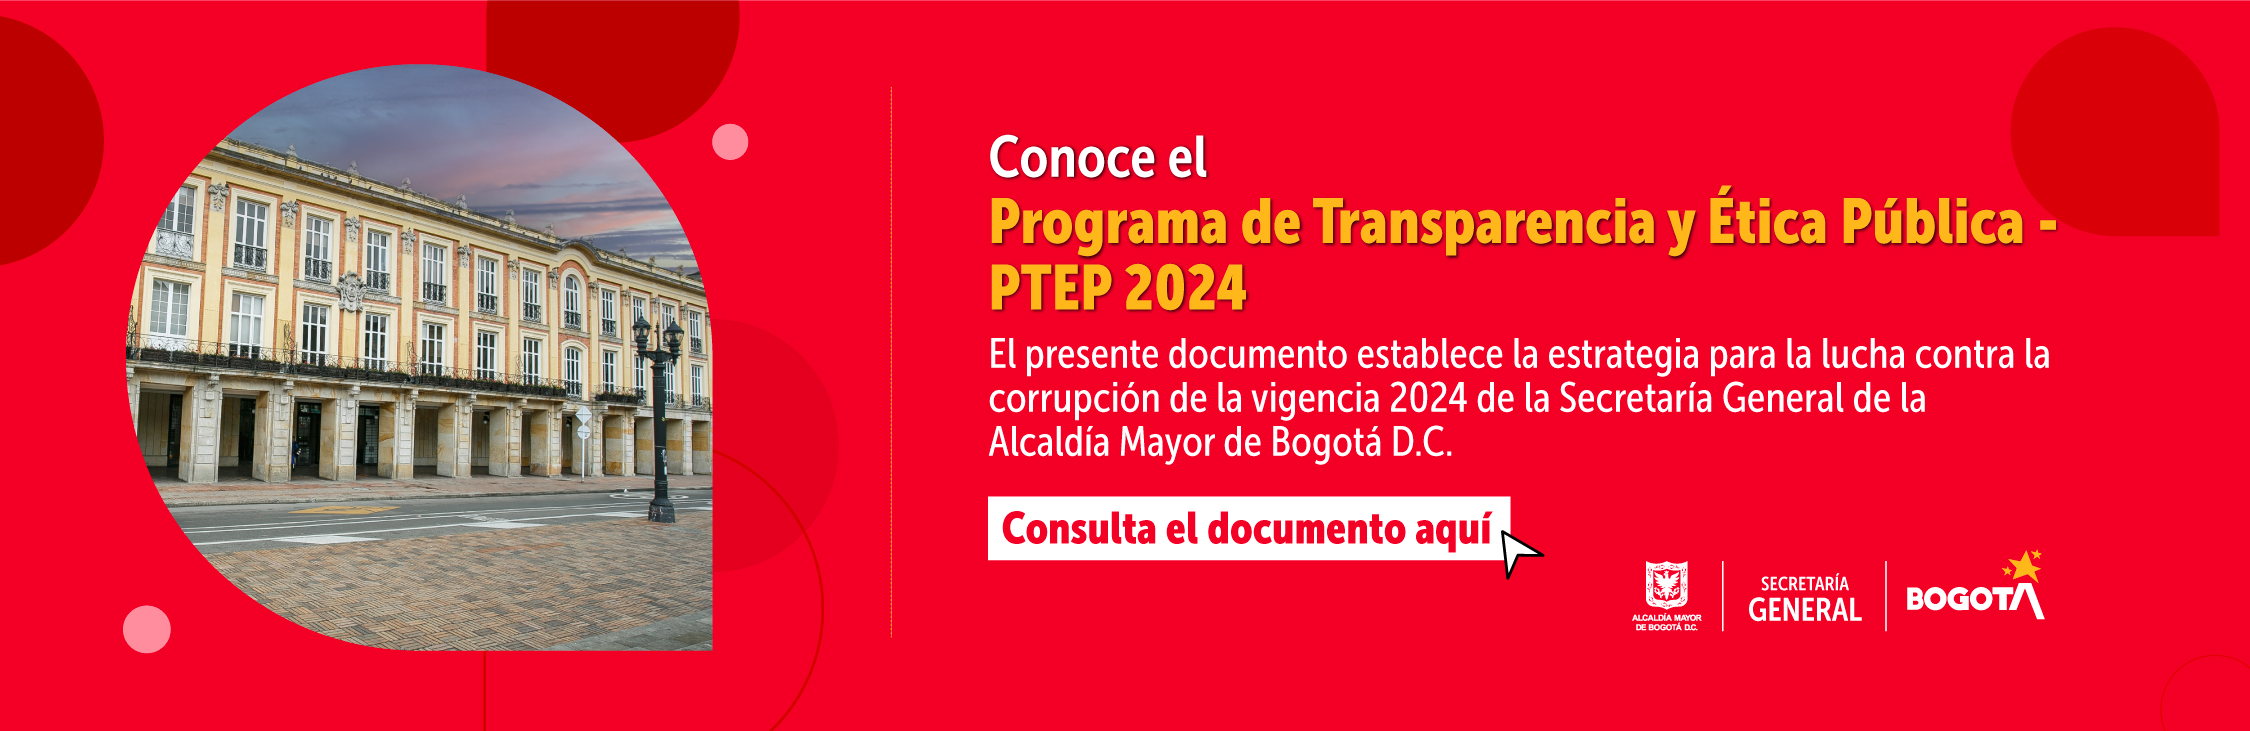 Programa de Transparencia y Ética Pública – PTEP 2024 versión 2